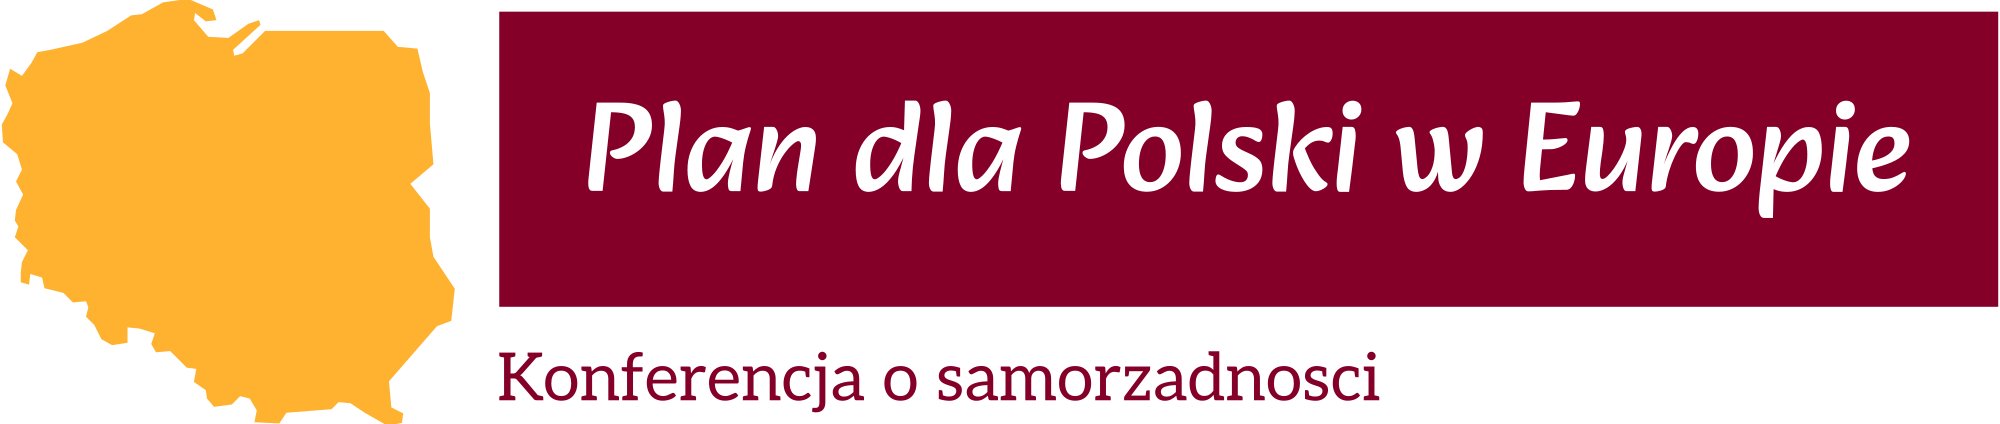 Plan dla Polski w Europie — Konferencja o samorządności w Europie